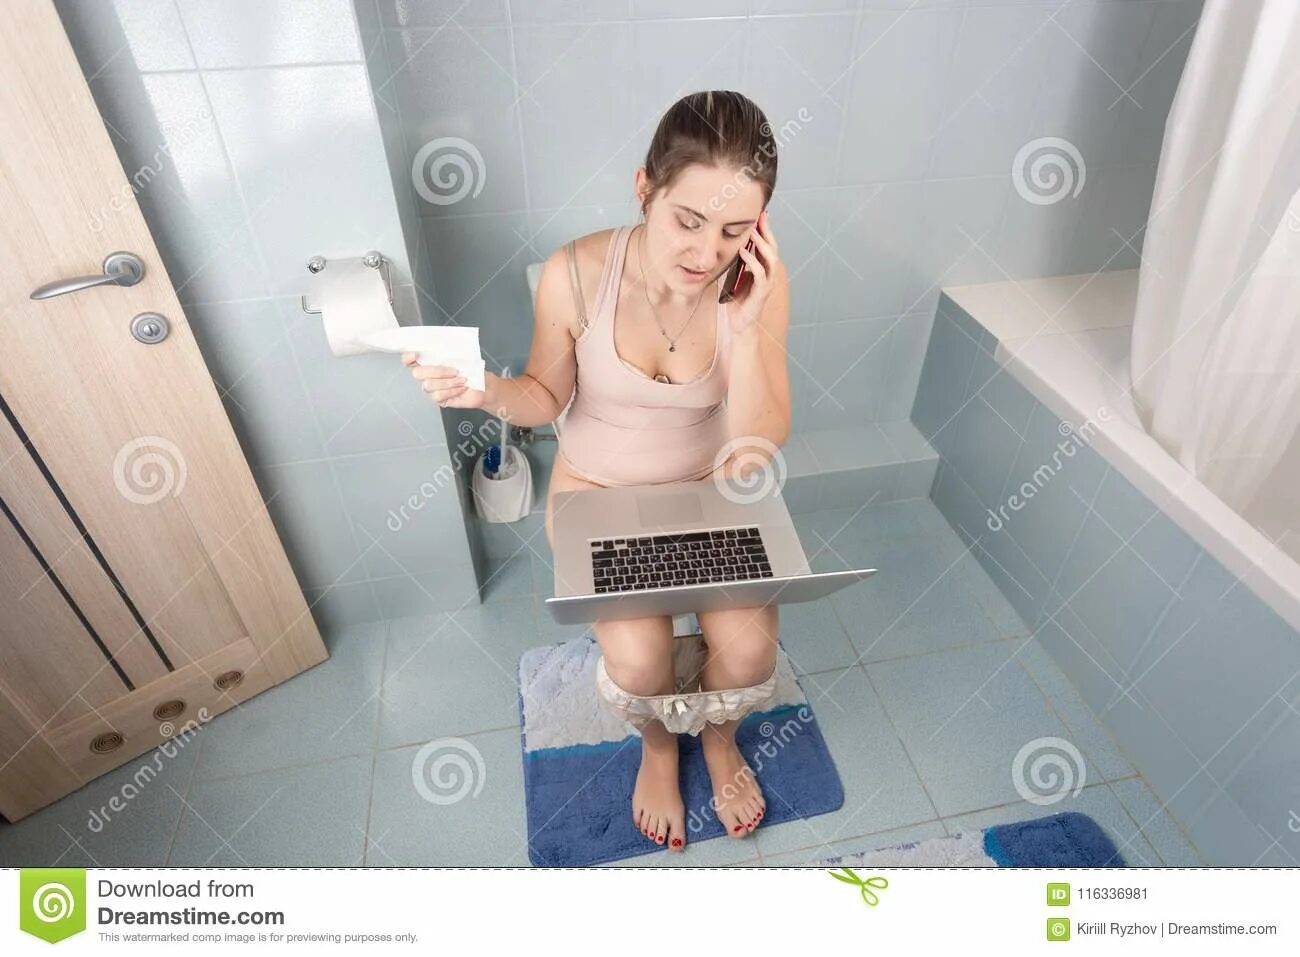 Женщина дома в туалете. В туалете с ноутбуком. Девушка на унитазе с ноутбуком. Женщина сидит в туалете. Баба на унитазе с ноутбуком.